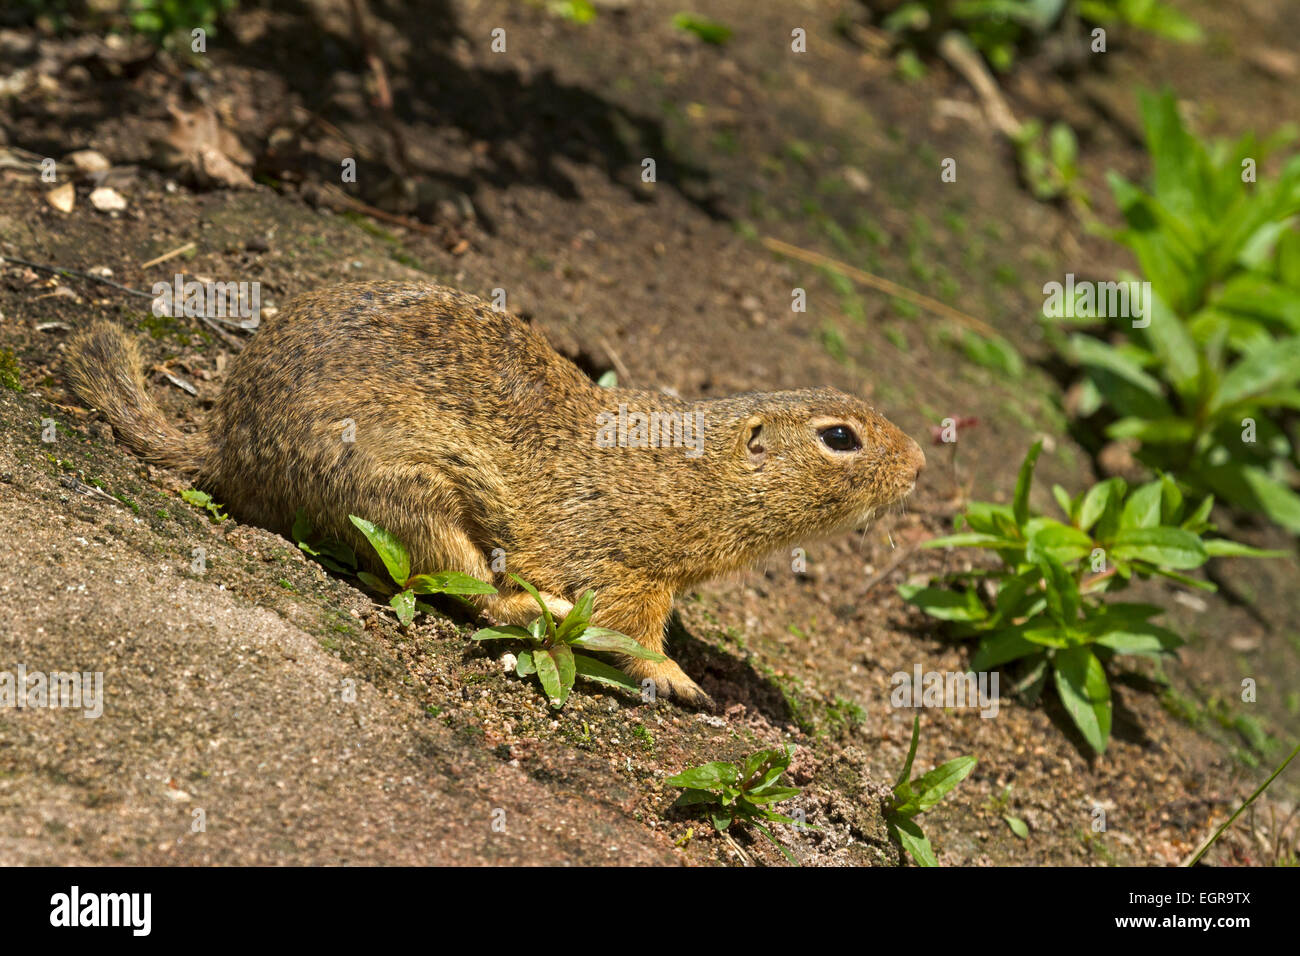 European Ground Squirrel / Spermophilus citellus Stock Photo